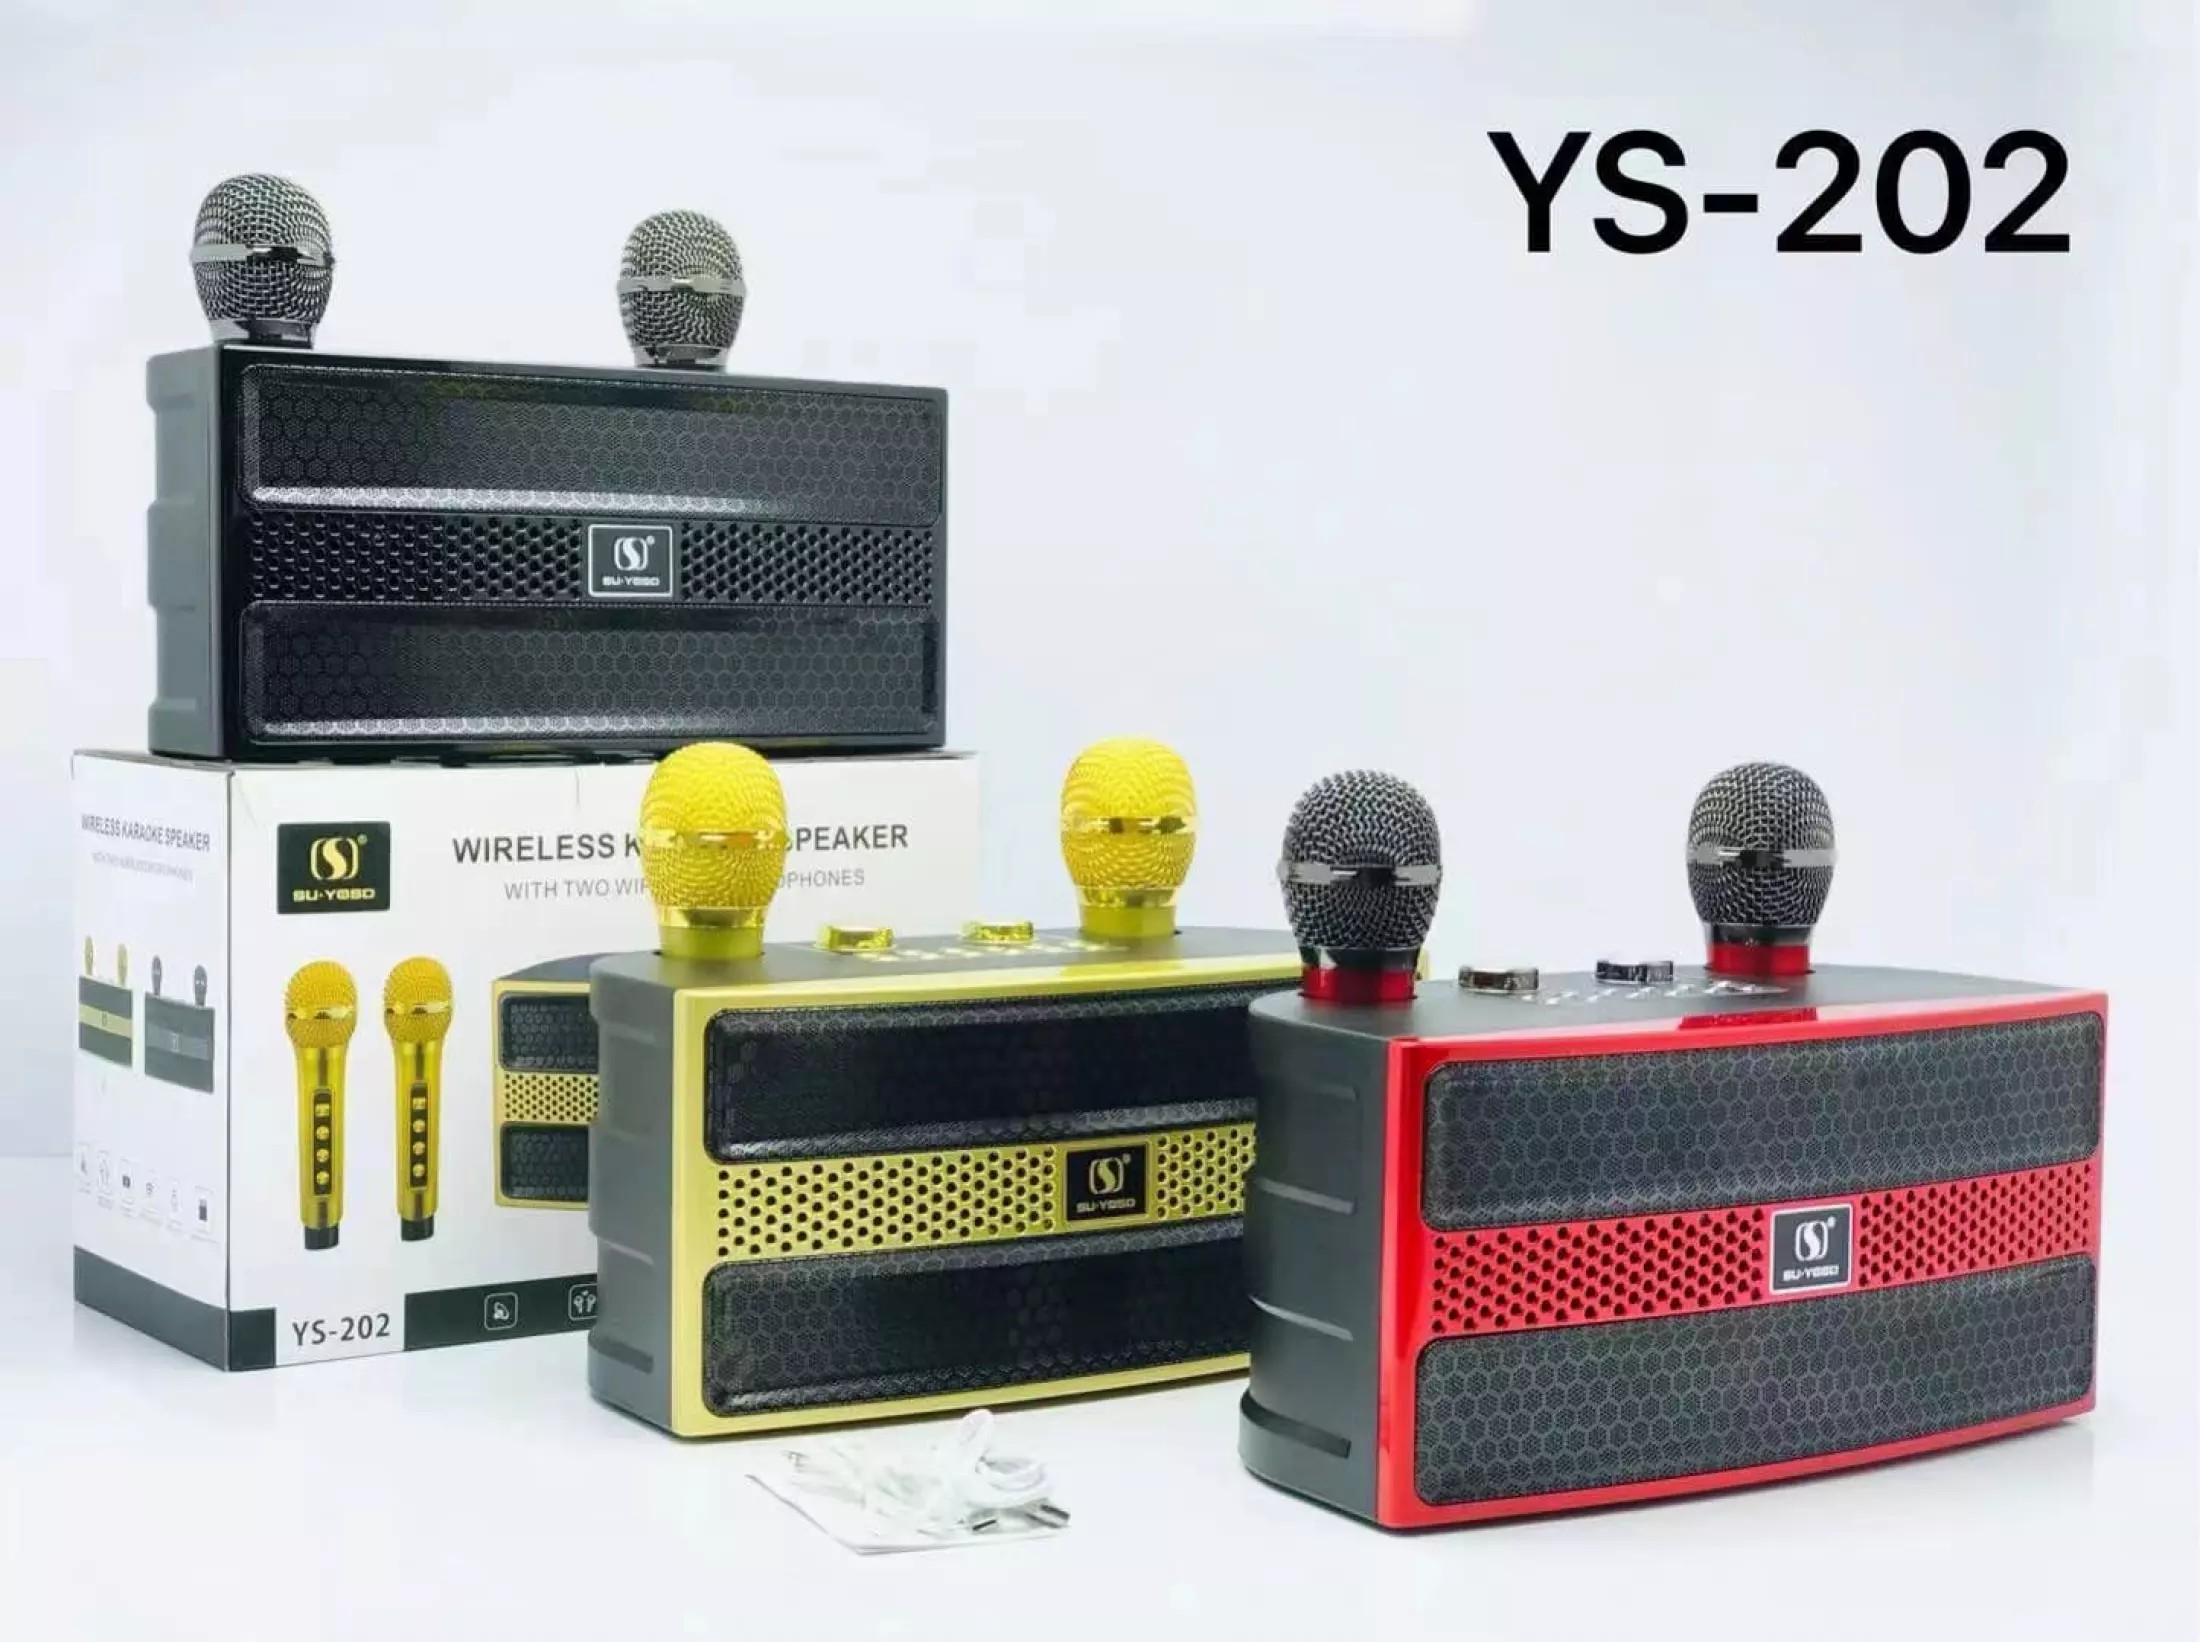 Loa bluetooth karaoke Su-Yosd YS-202 - Tặng kèm 2 micro không dây - Hiệu ứng đổi giọng, điều chỉnh echo, bass, treble, reverb, effect - Loa xách tay du lịch thời trang nghe nhạc, hát karaoke cực hay - Thiết kế hiện đại, sang trọng